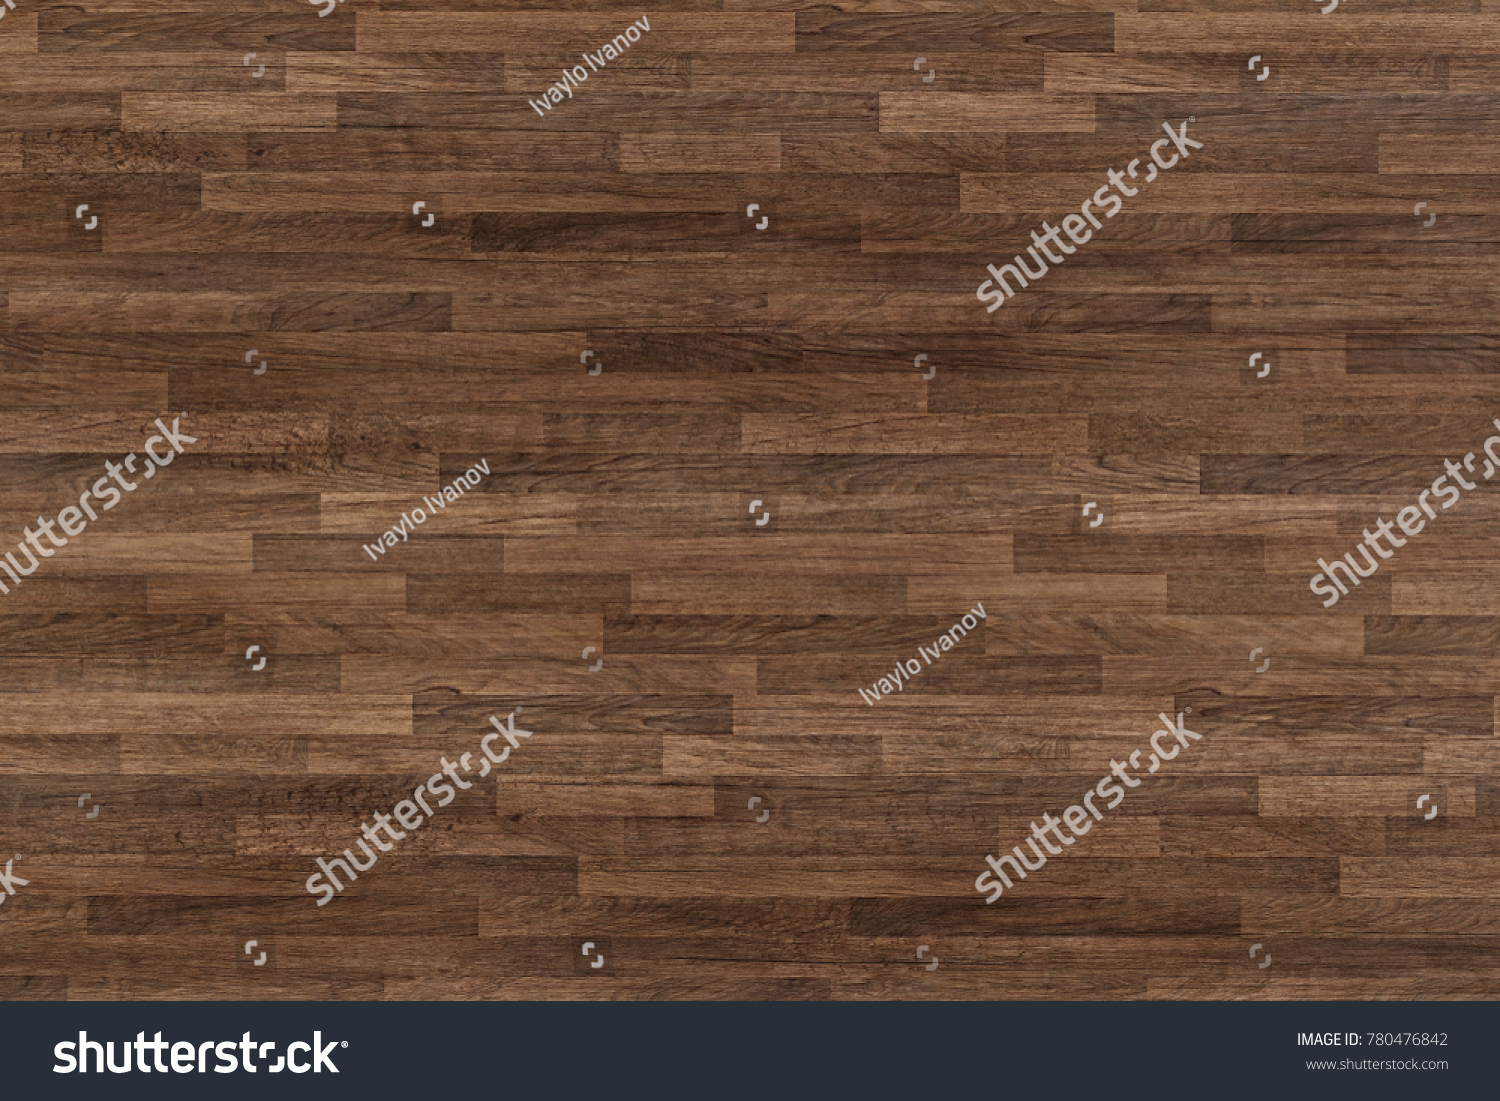 Seamless wood floor texture, hardwood floor texture, wooden parquet. #780476842